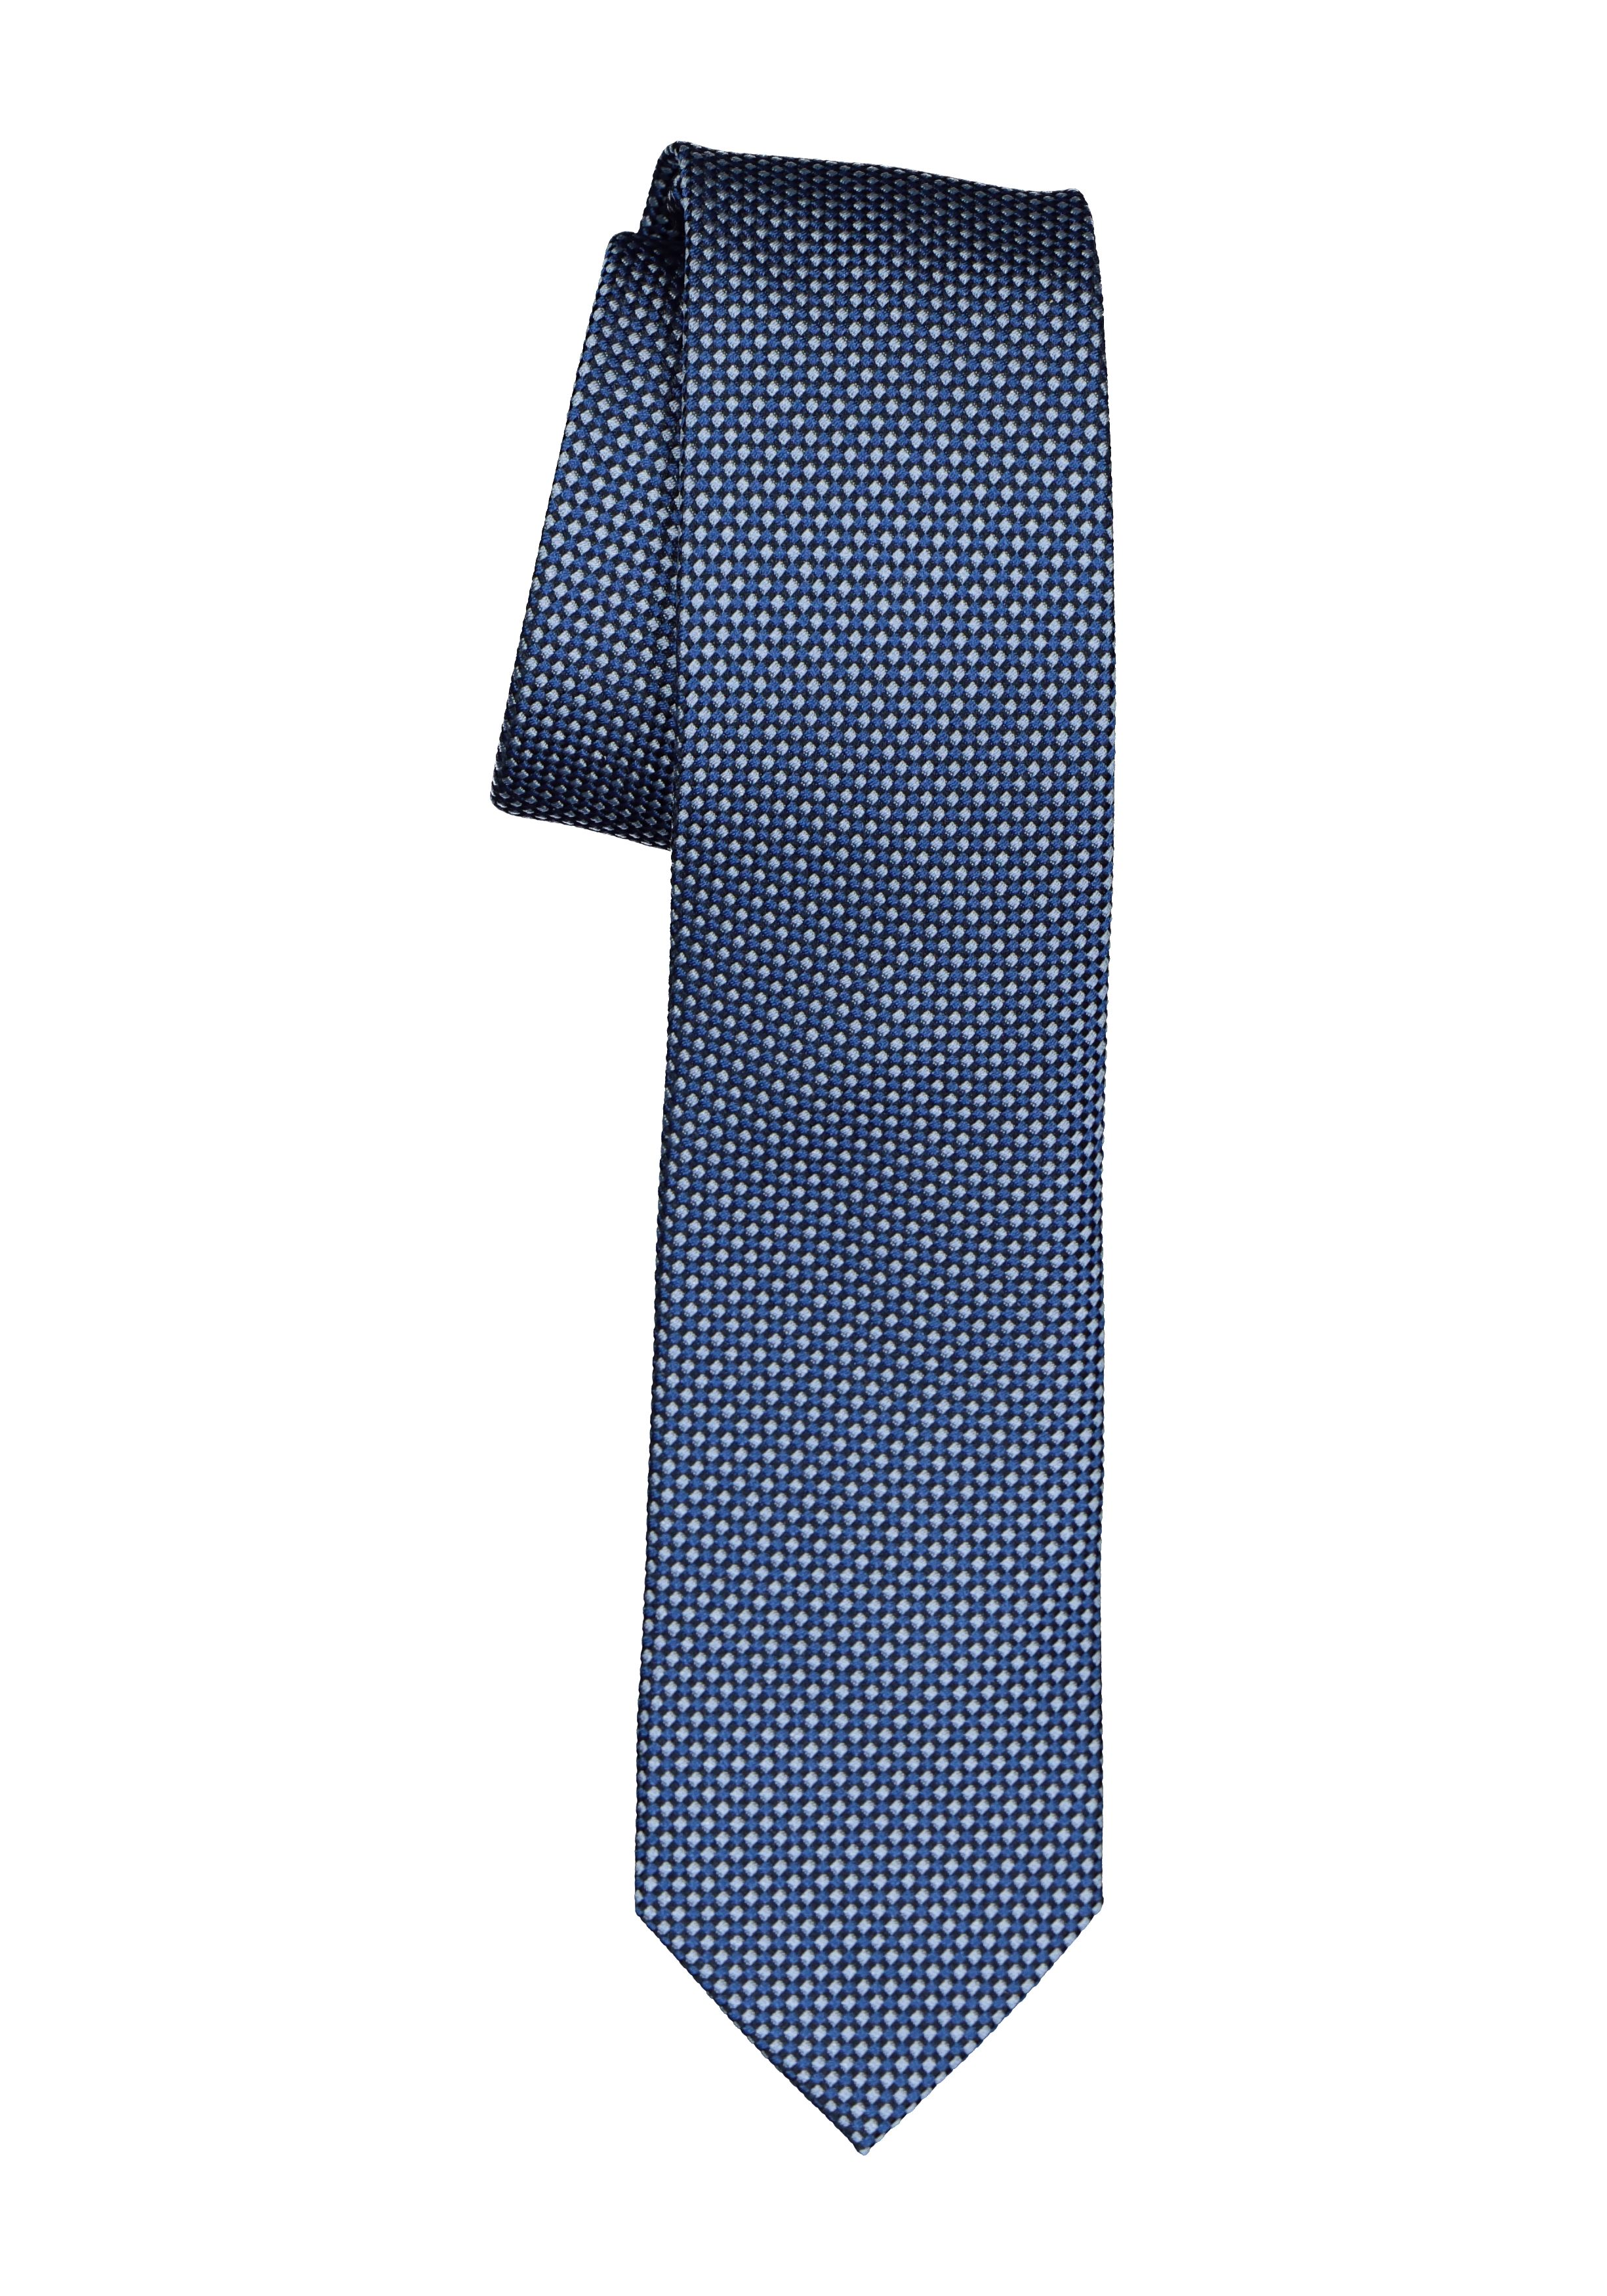 staking Medicinaal Incubus Michaelis stropdas, blauw met wit dessin - Shop de nieuwste voorjaarsmode